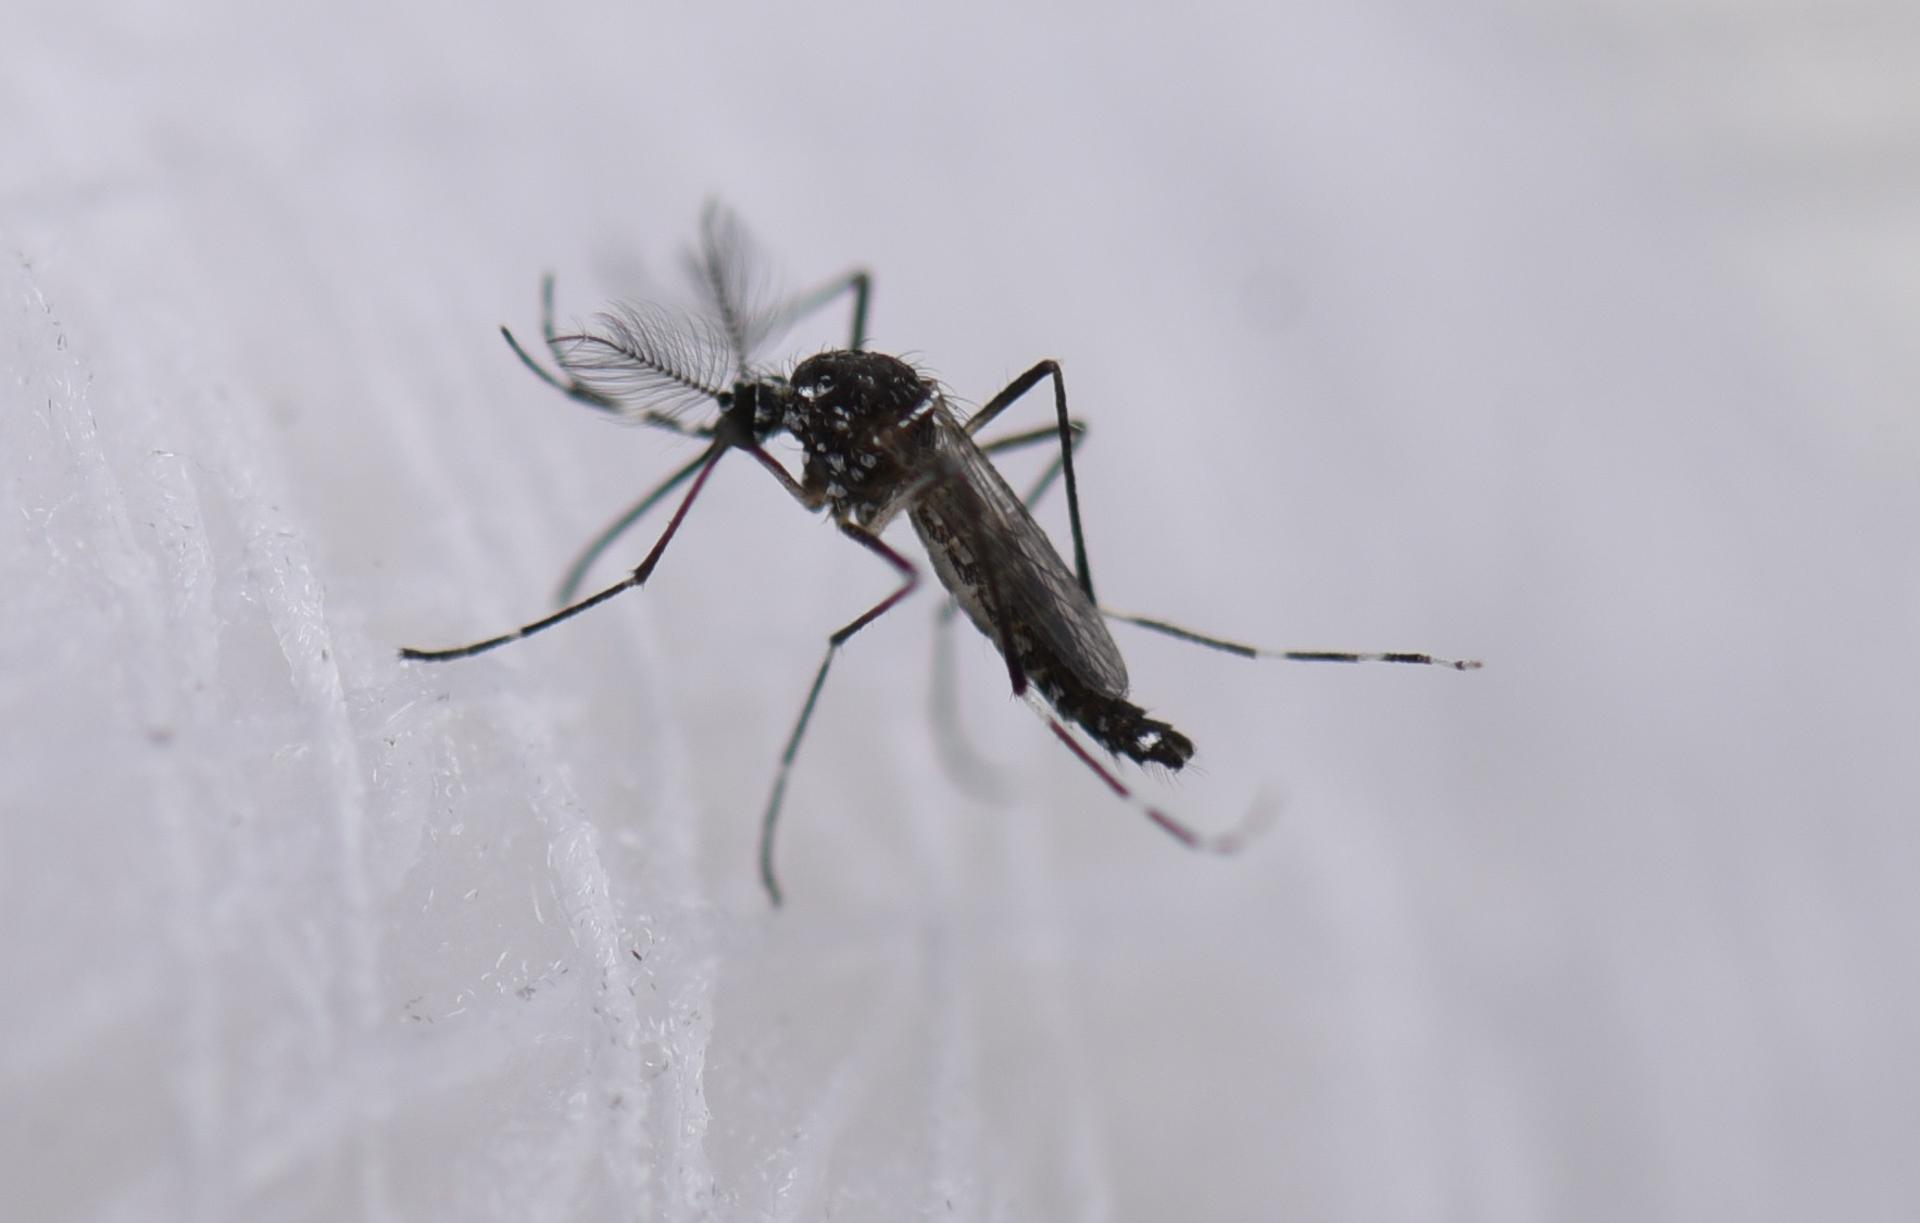 INCIDENCIA. Alrededor de 40.000 personas mueren cada año a causa del dengue grave en todo el mundo.